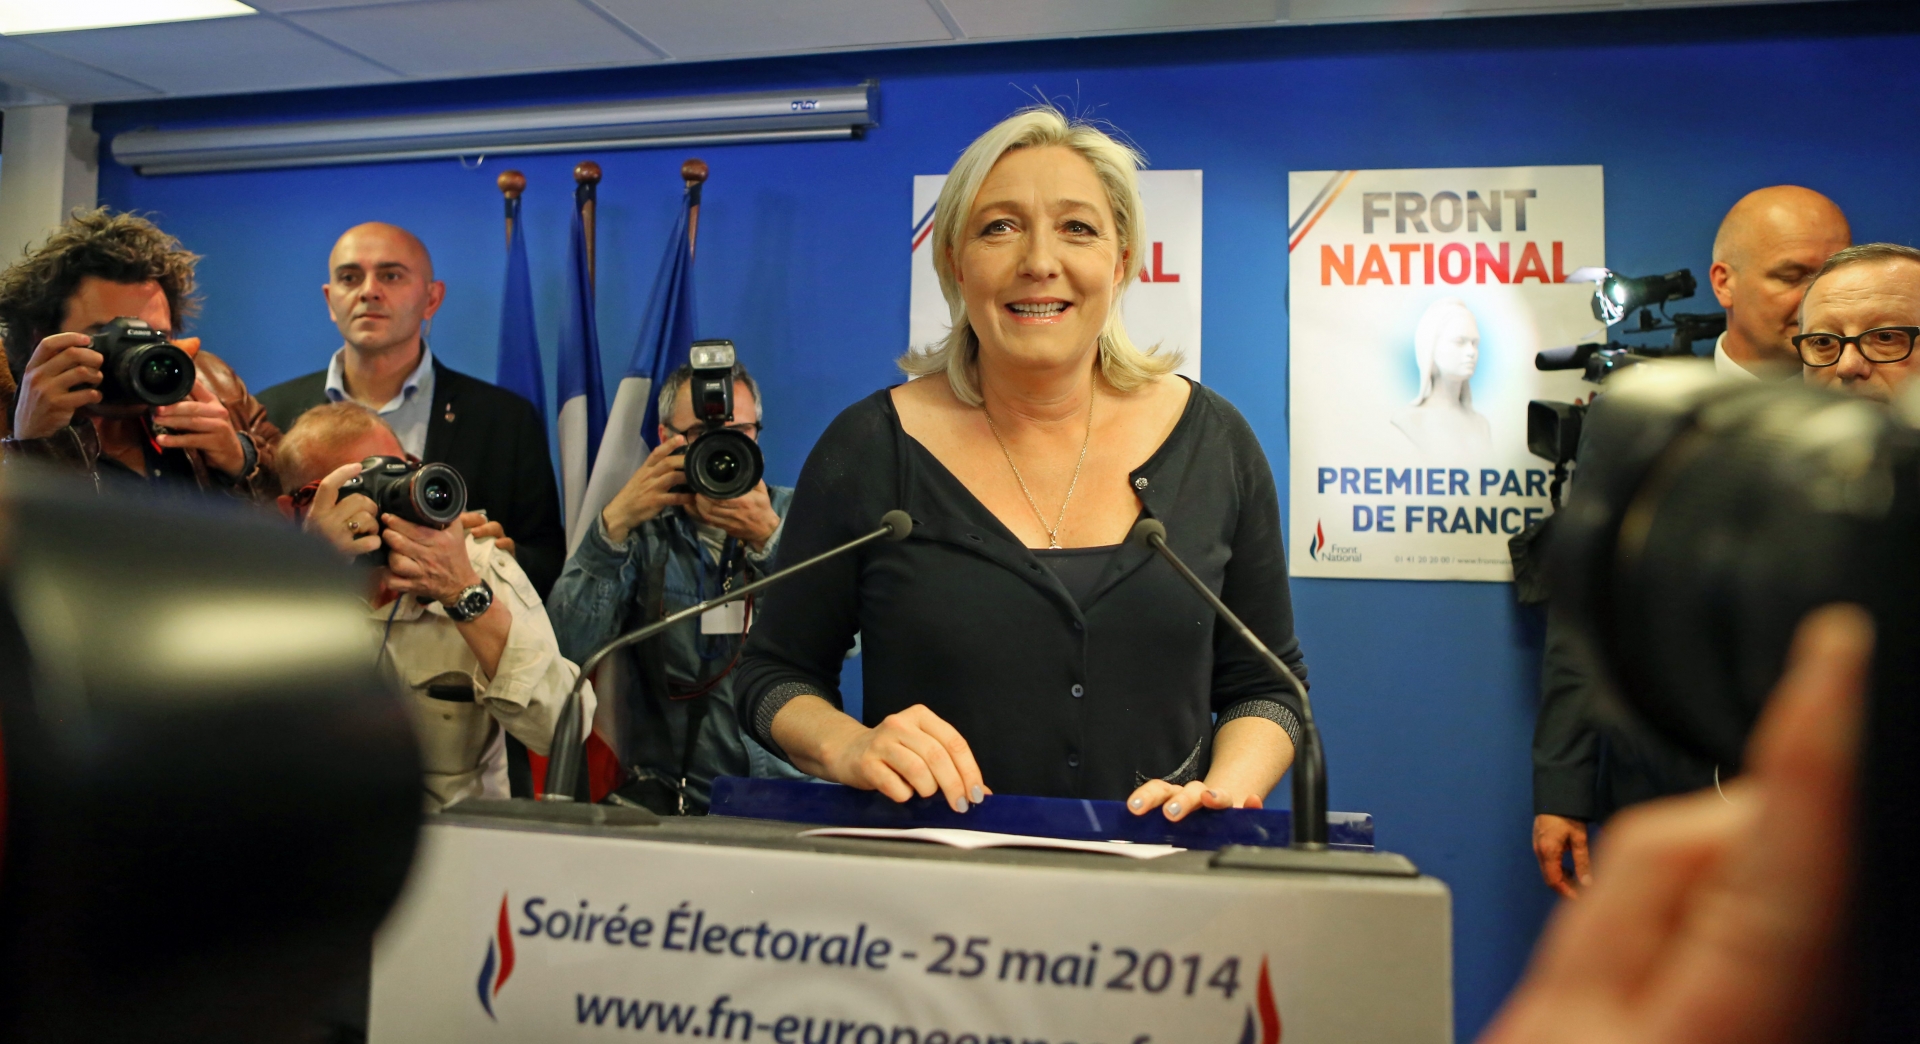 Les Français ont exprimé aujourd'hui un lourd désaveu avec la politique actuelle selon Marine Le Pen.